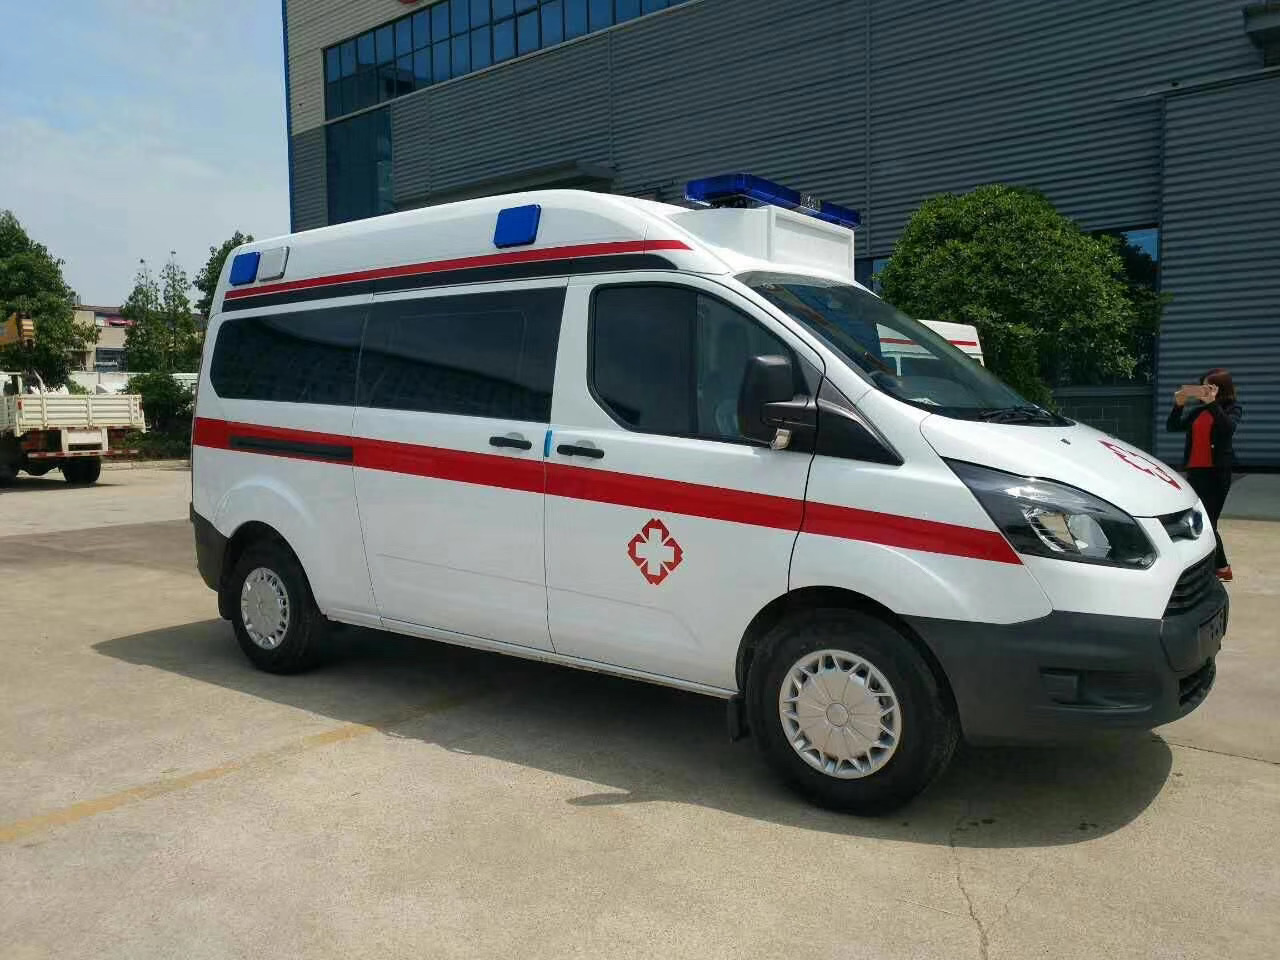 五寨县出院转院救护车